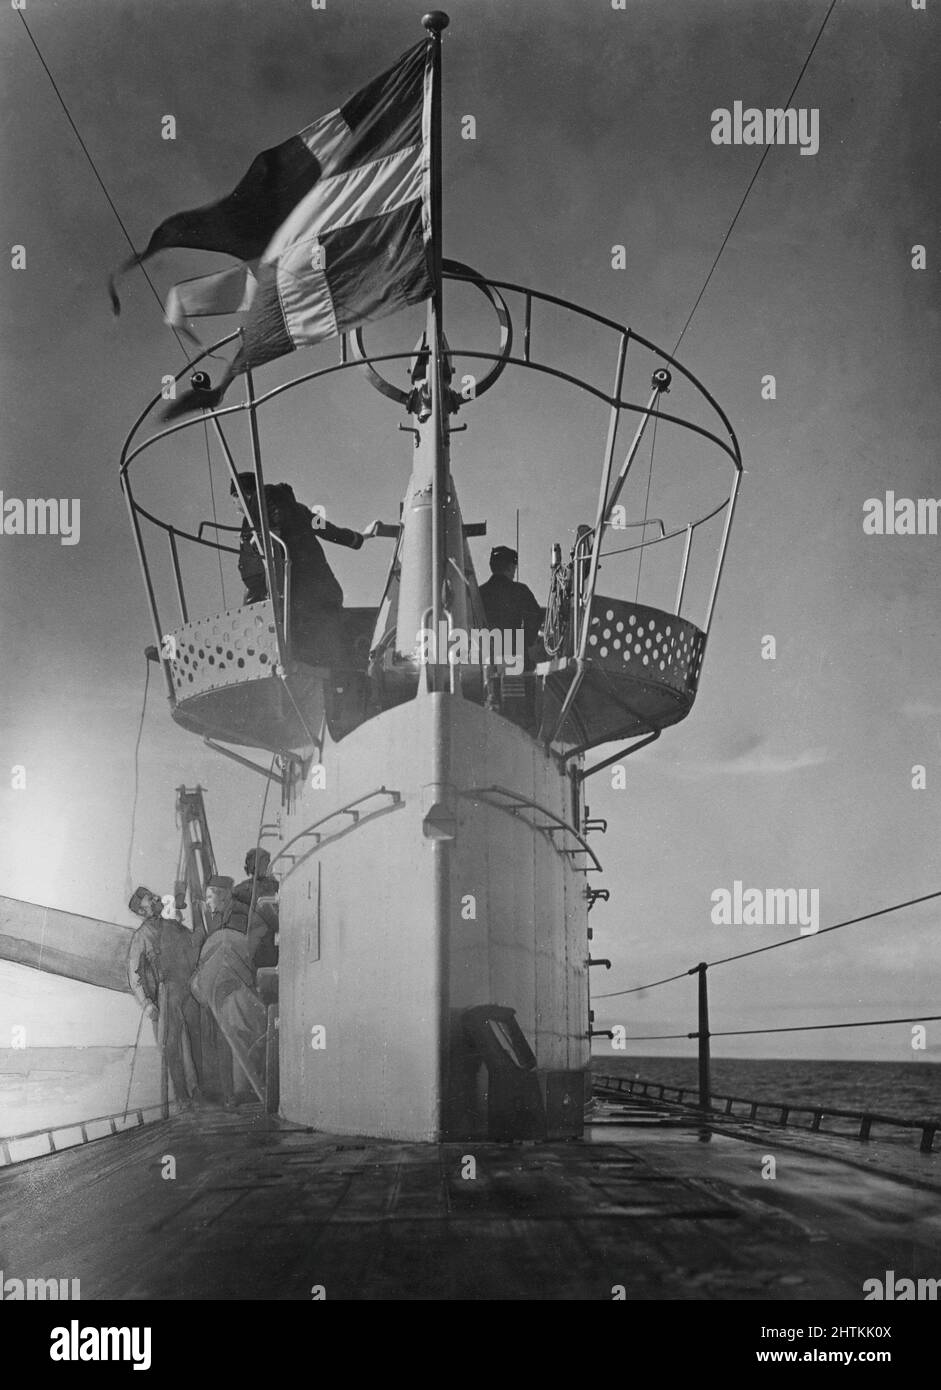 Submarino en el 1940s. Un submarino sueco ha emergido y la bandera sueca es visible desde la torre. Foto de stock